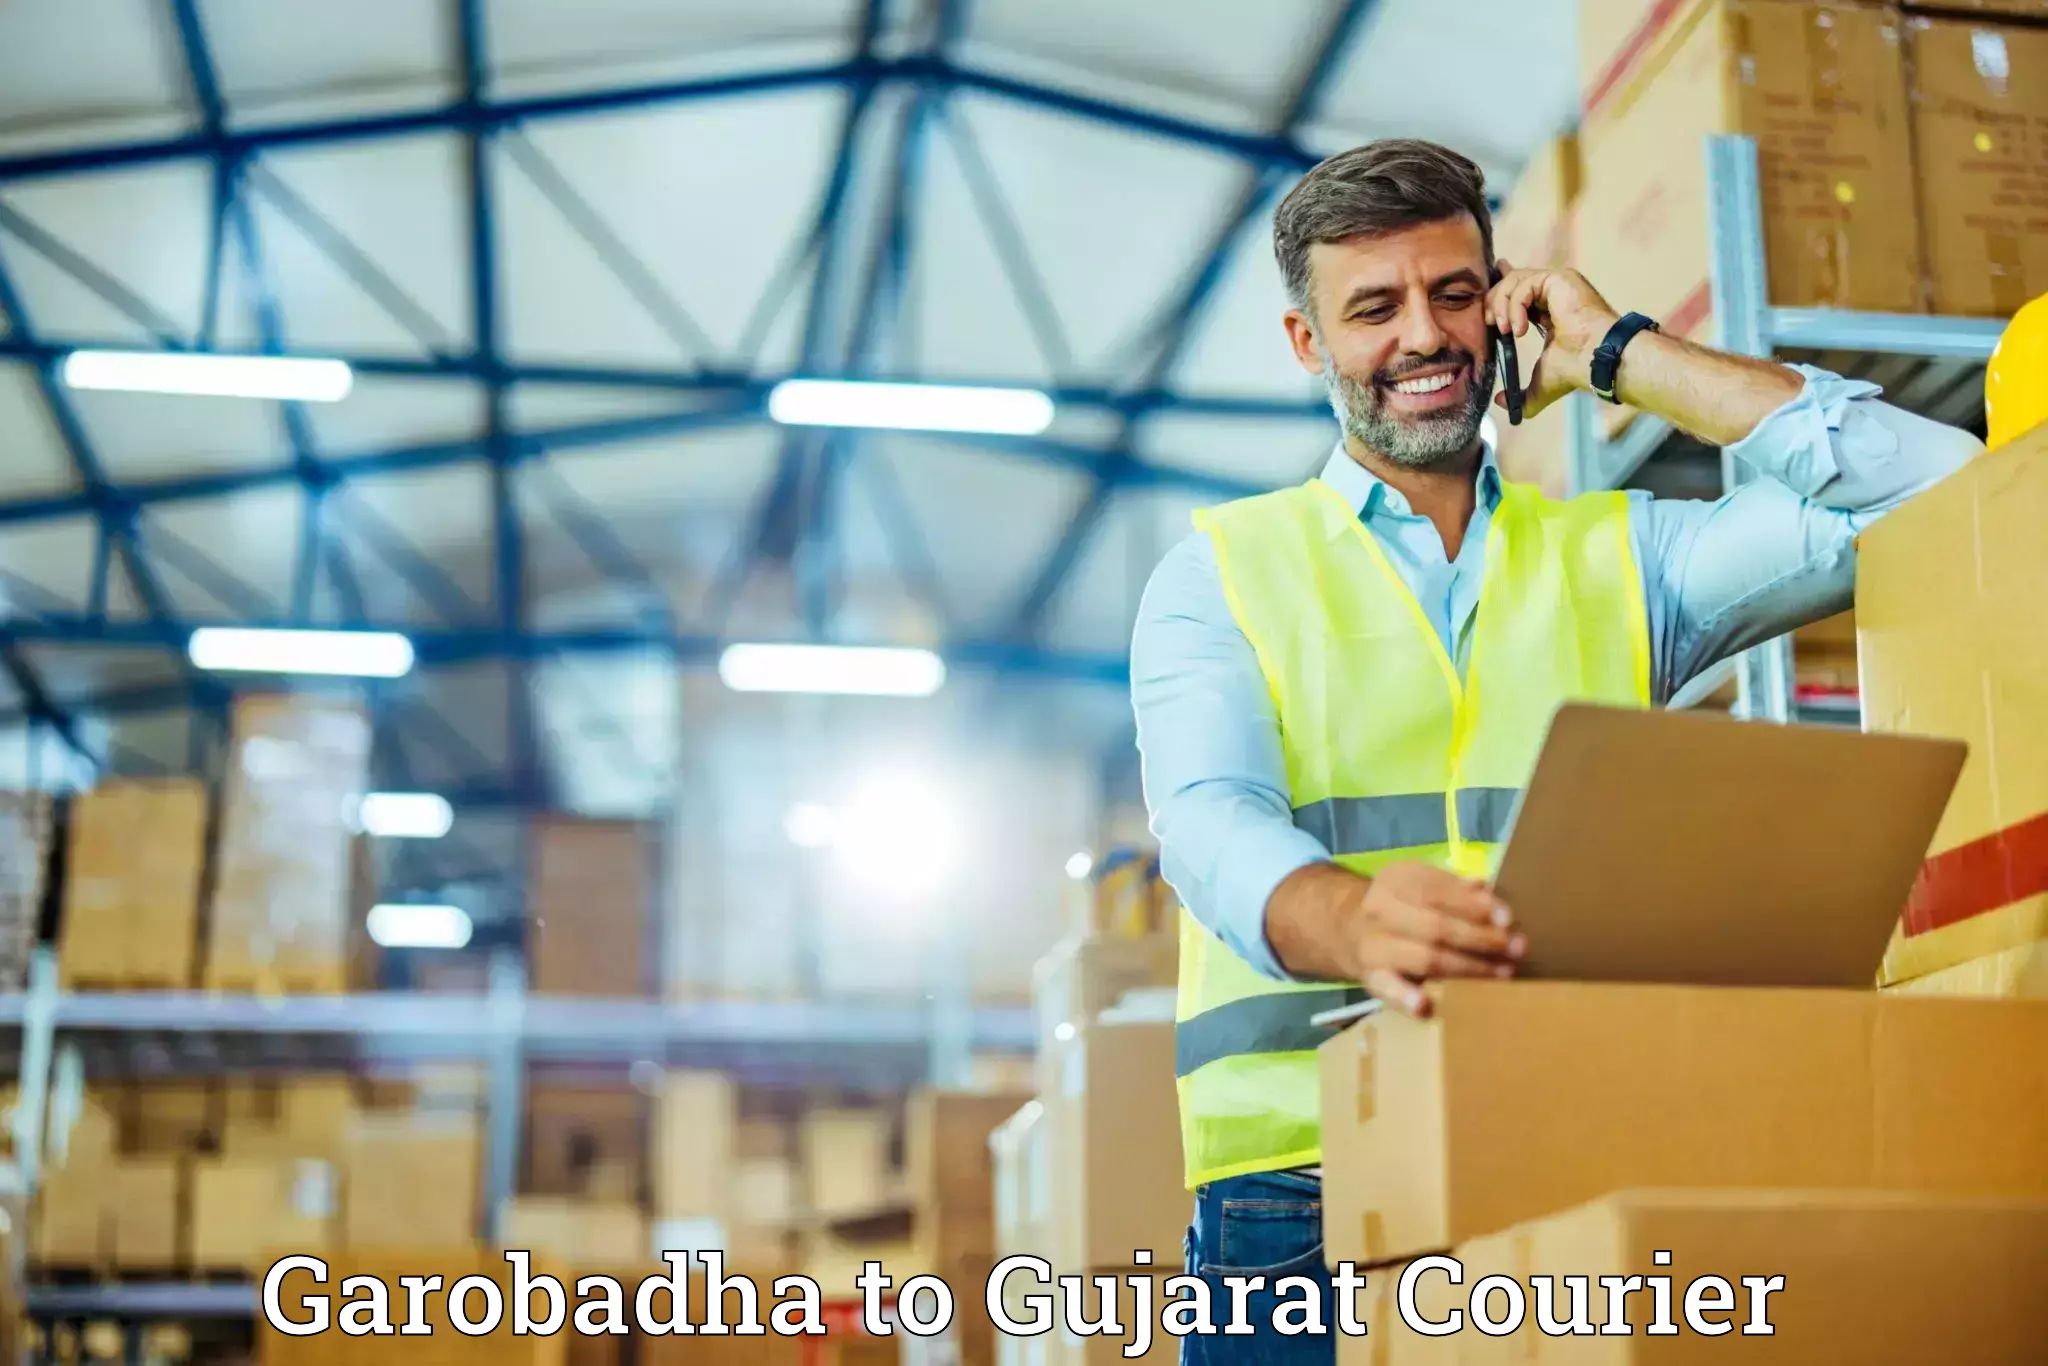 Household moving experts Garobadha to Gujarat